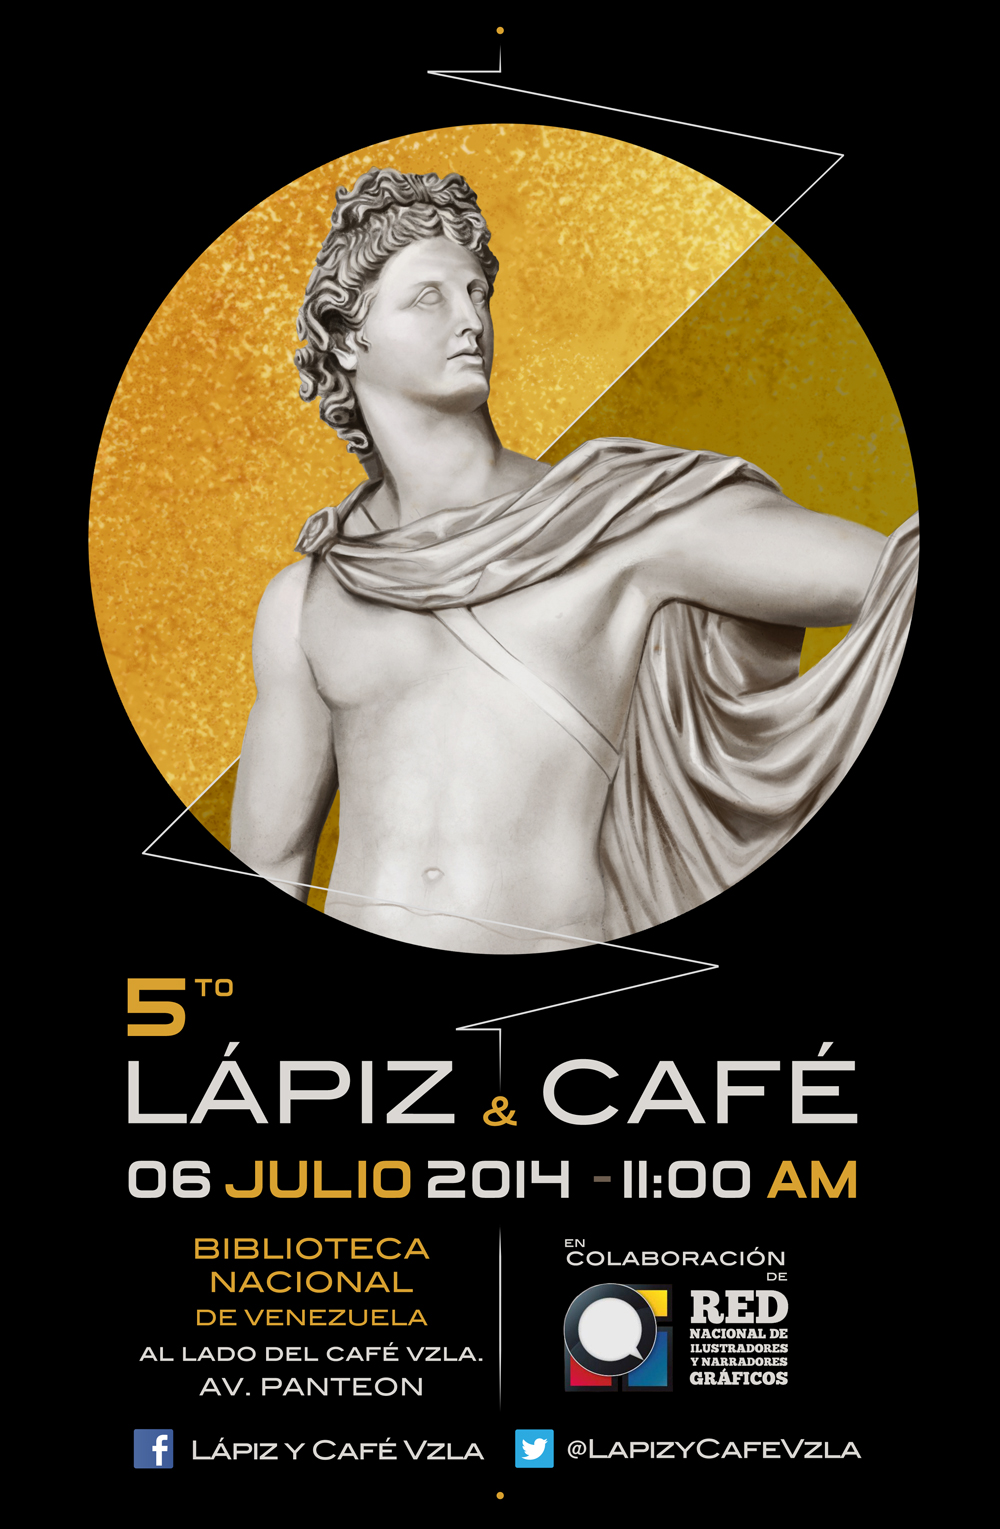 5to Lápiz y Café Venezuela - Julio 2014